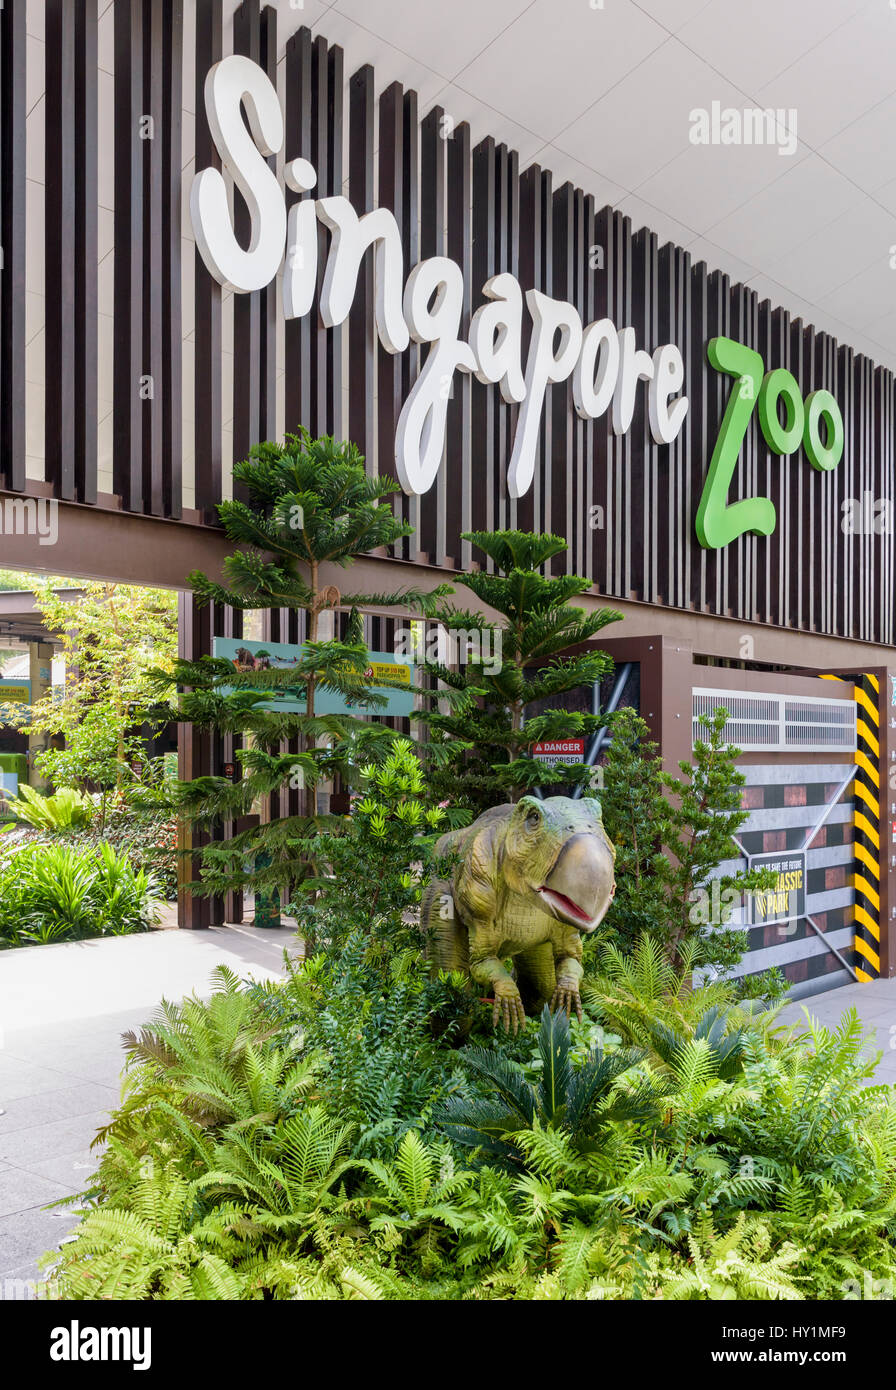 Der Zoo von Singapur Zeichen und Dinosaurier Modell am Eingangstor zum Zoo von Singapur, Singapur Stockfoto